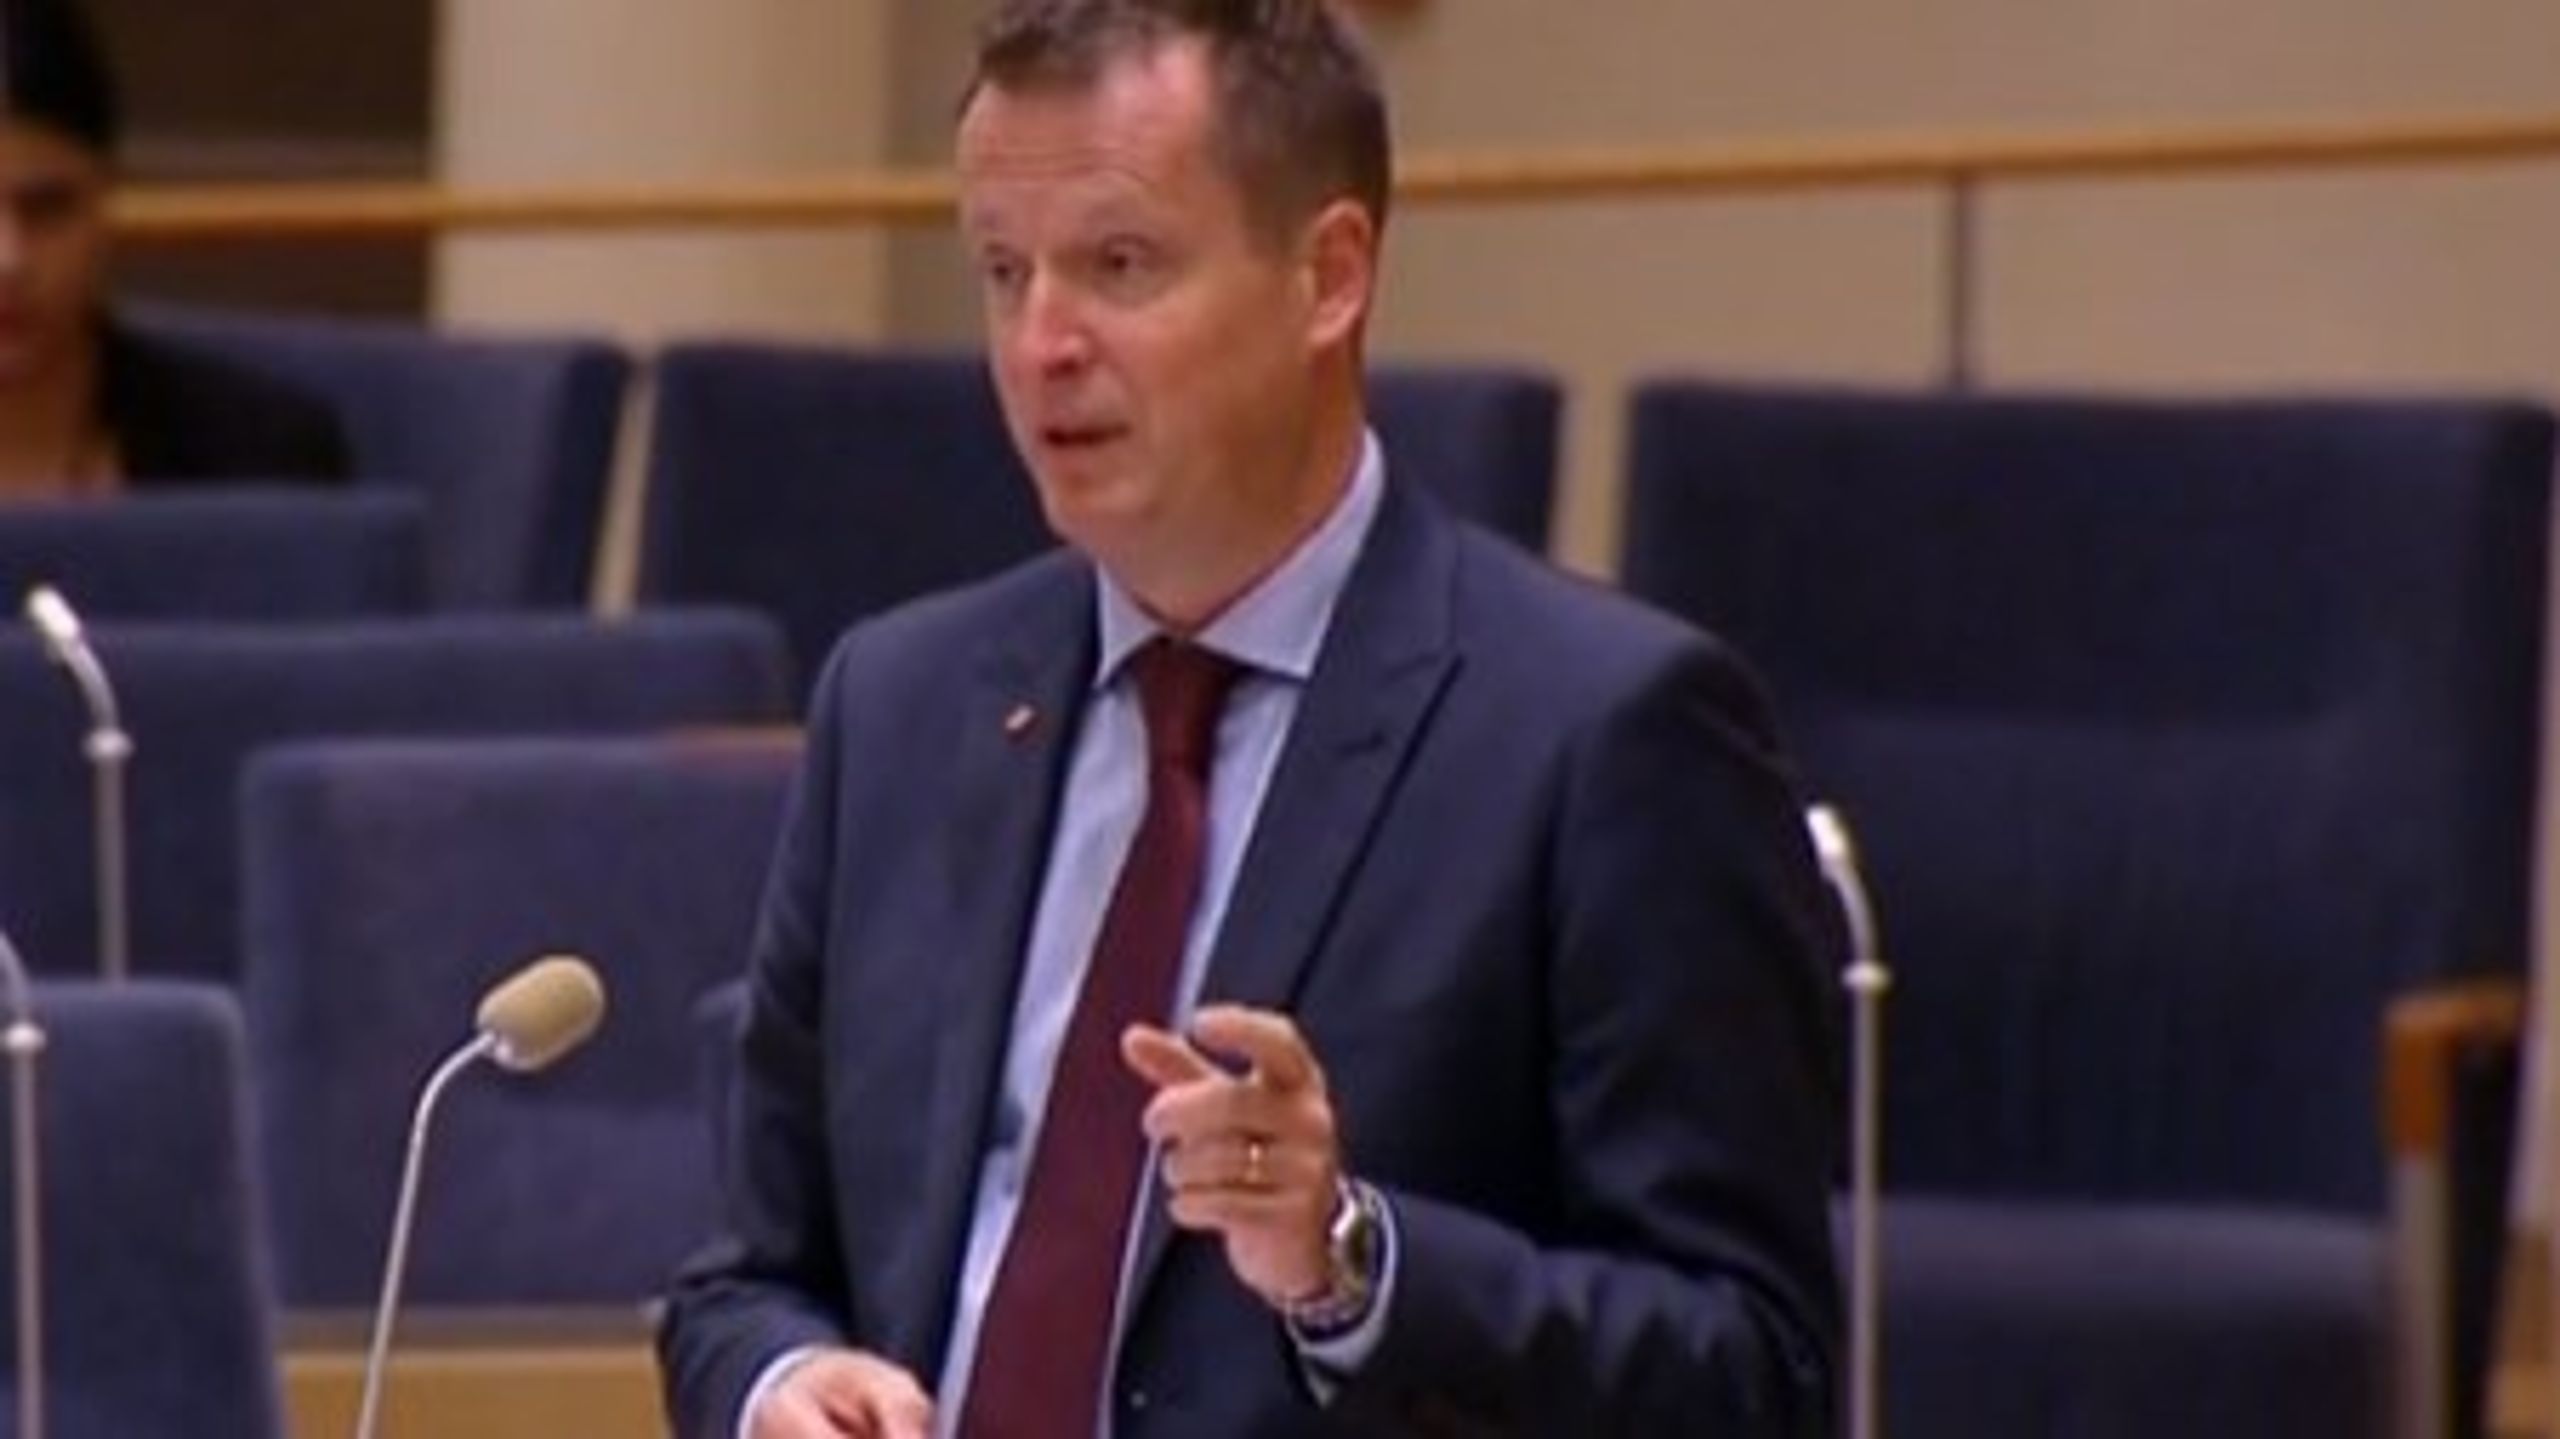 Inrikesminister Anders Ygeman (S) vill ge myndigheterna ytterligare redskap för att bekämpa terrorism och andra grova brott.